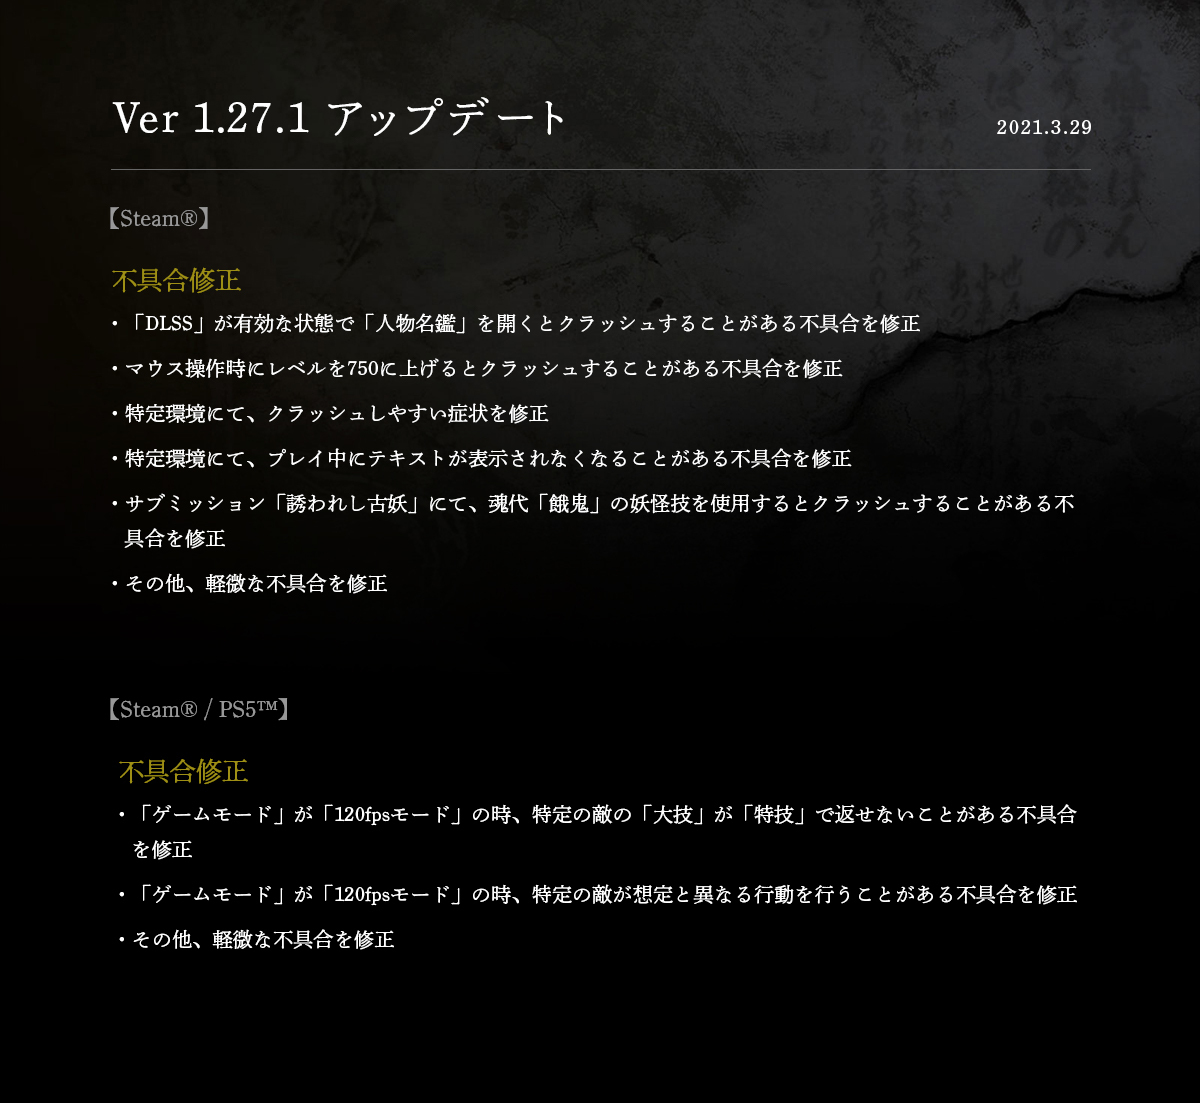 《仁王2》最新补丁上线 主要修复Steam/PS5版各种BUG